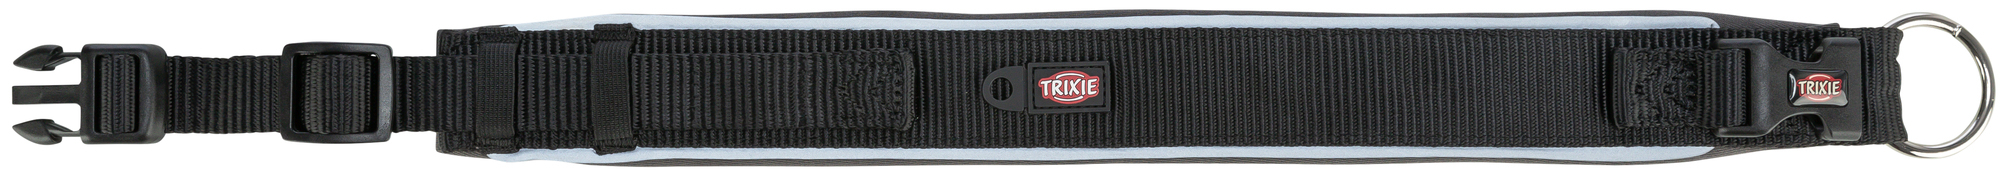 Trixie Premium collier extra large - Noir/Gris Graphite